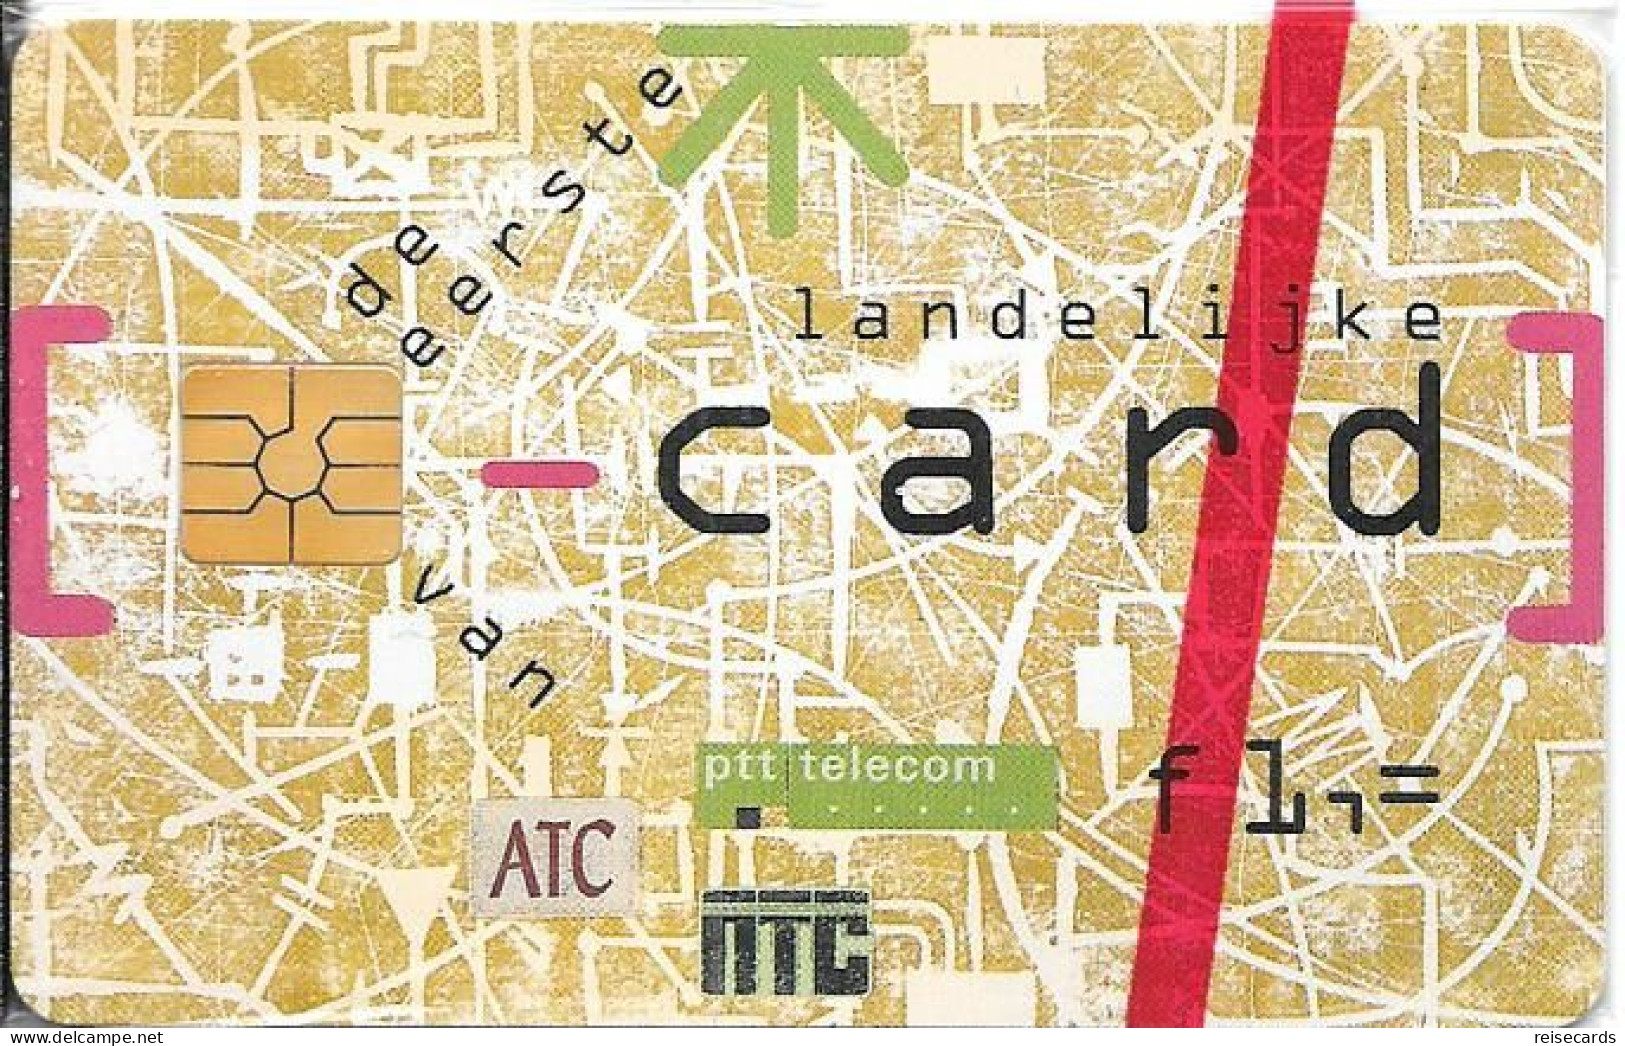 Netherlands: Ptt Telecom - 1994 De Eerste Landelijke Card Van ATC NTC. Mint - Públicas